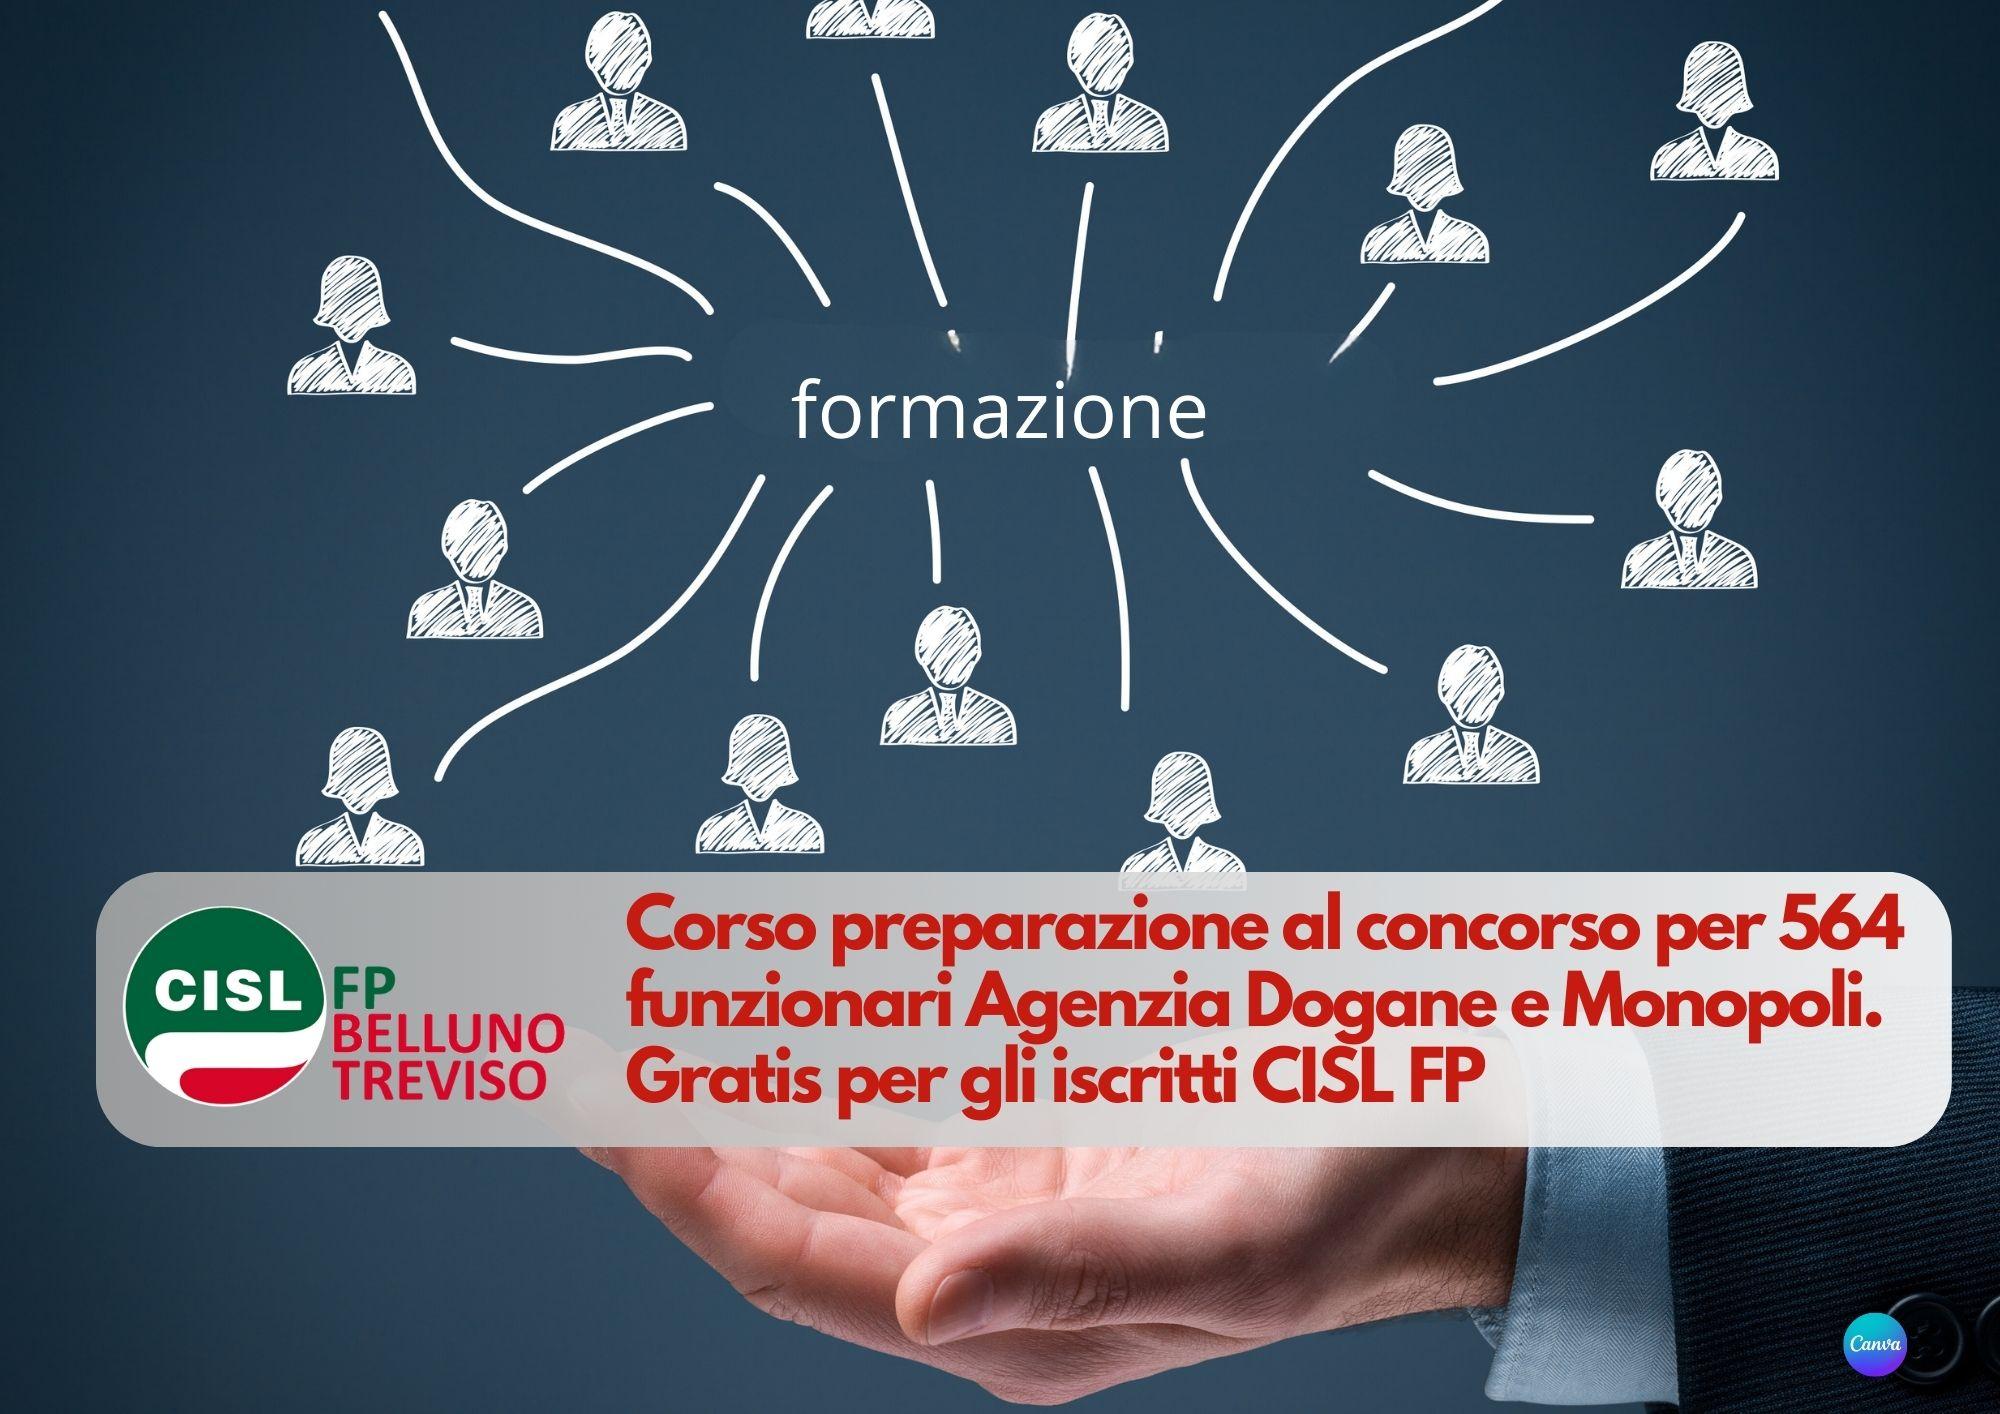 CISL FP Belluno Treviso. Concorso 564 funzionari Agenzia Dogane e Monopoli: corso di preparazione